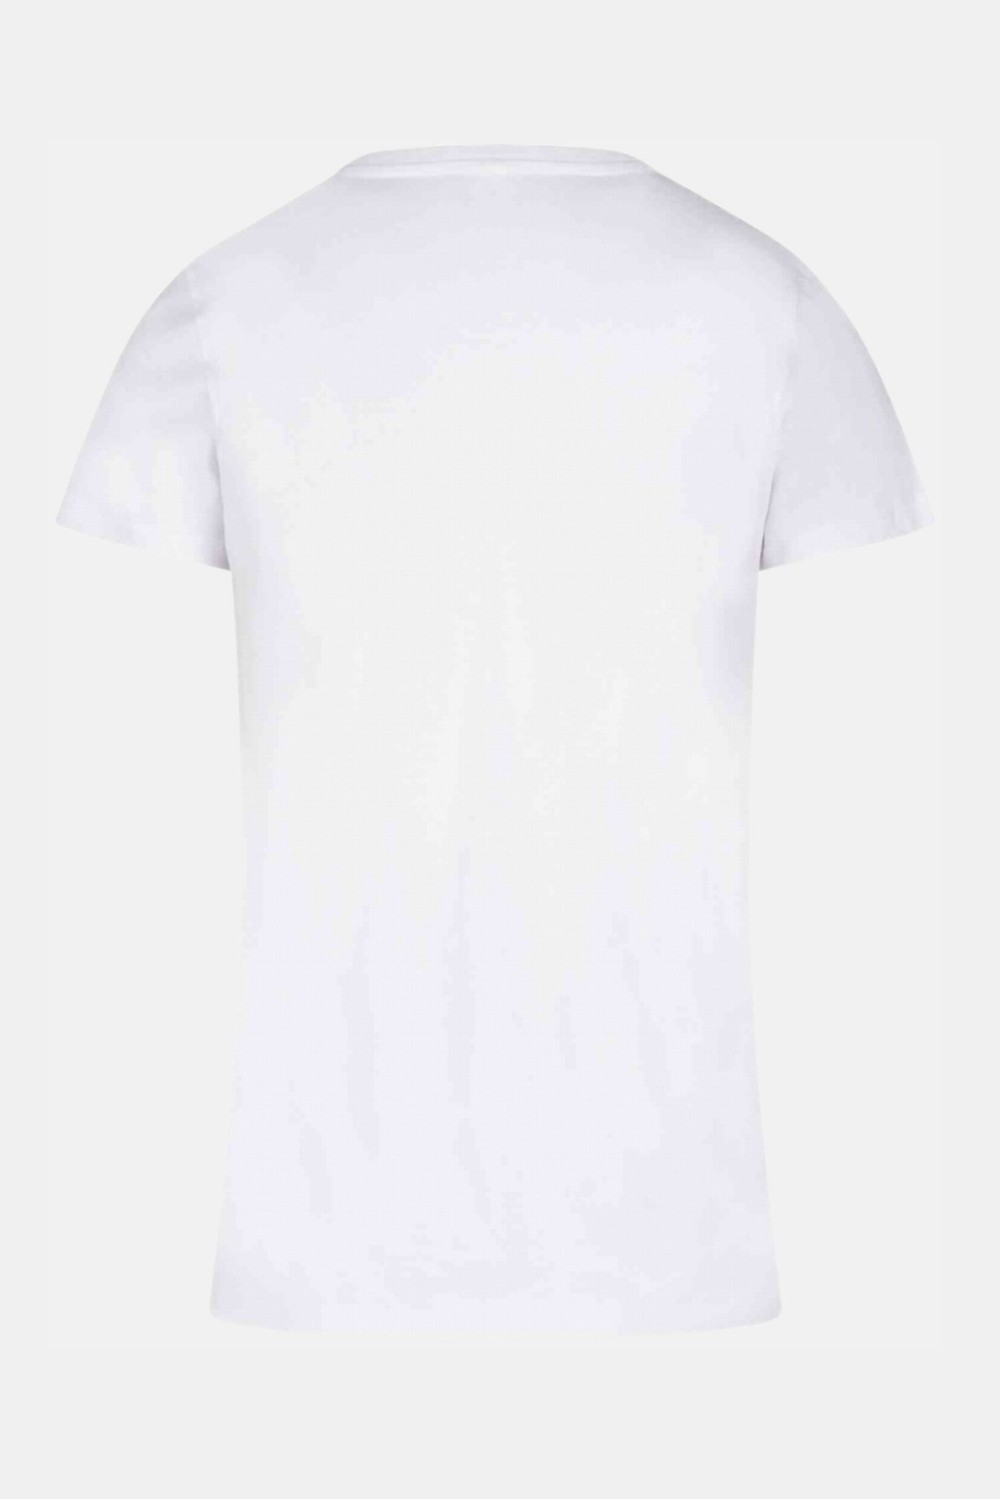 Blind camiseta blanca mujer - Patrice Catanzaro Página Oficial